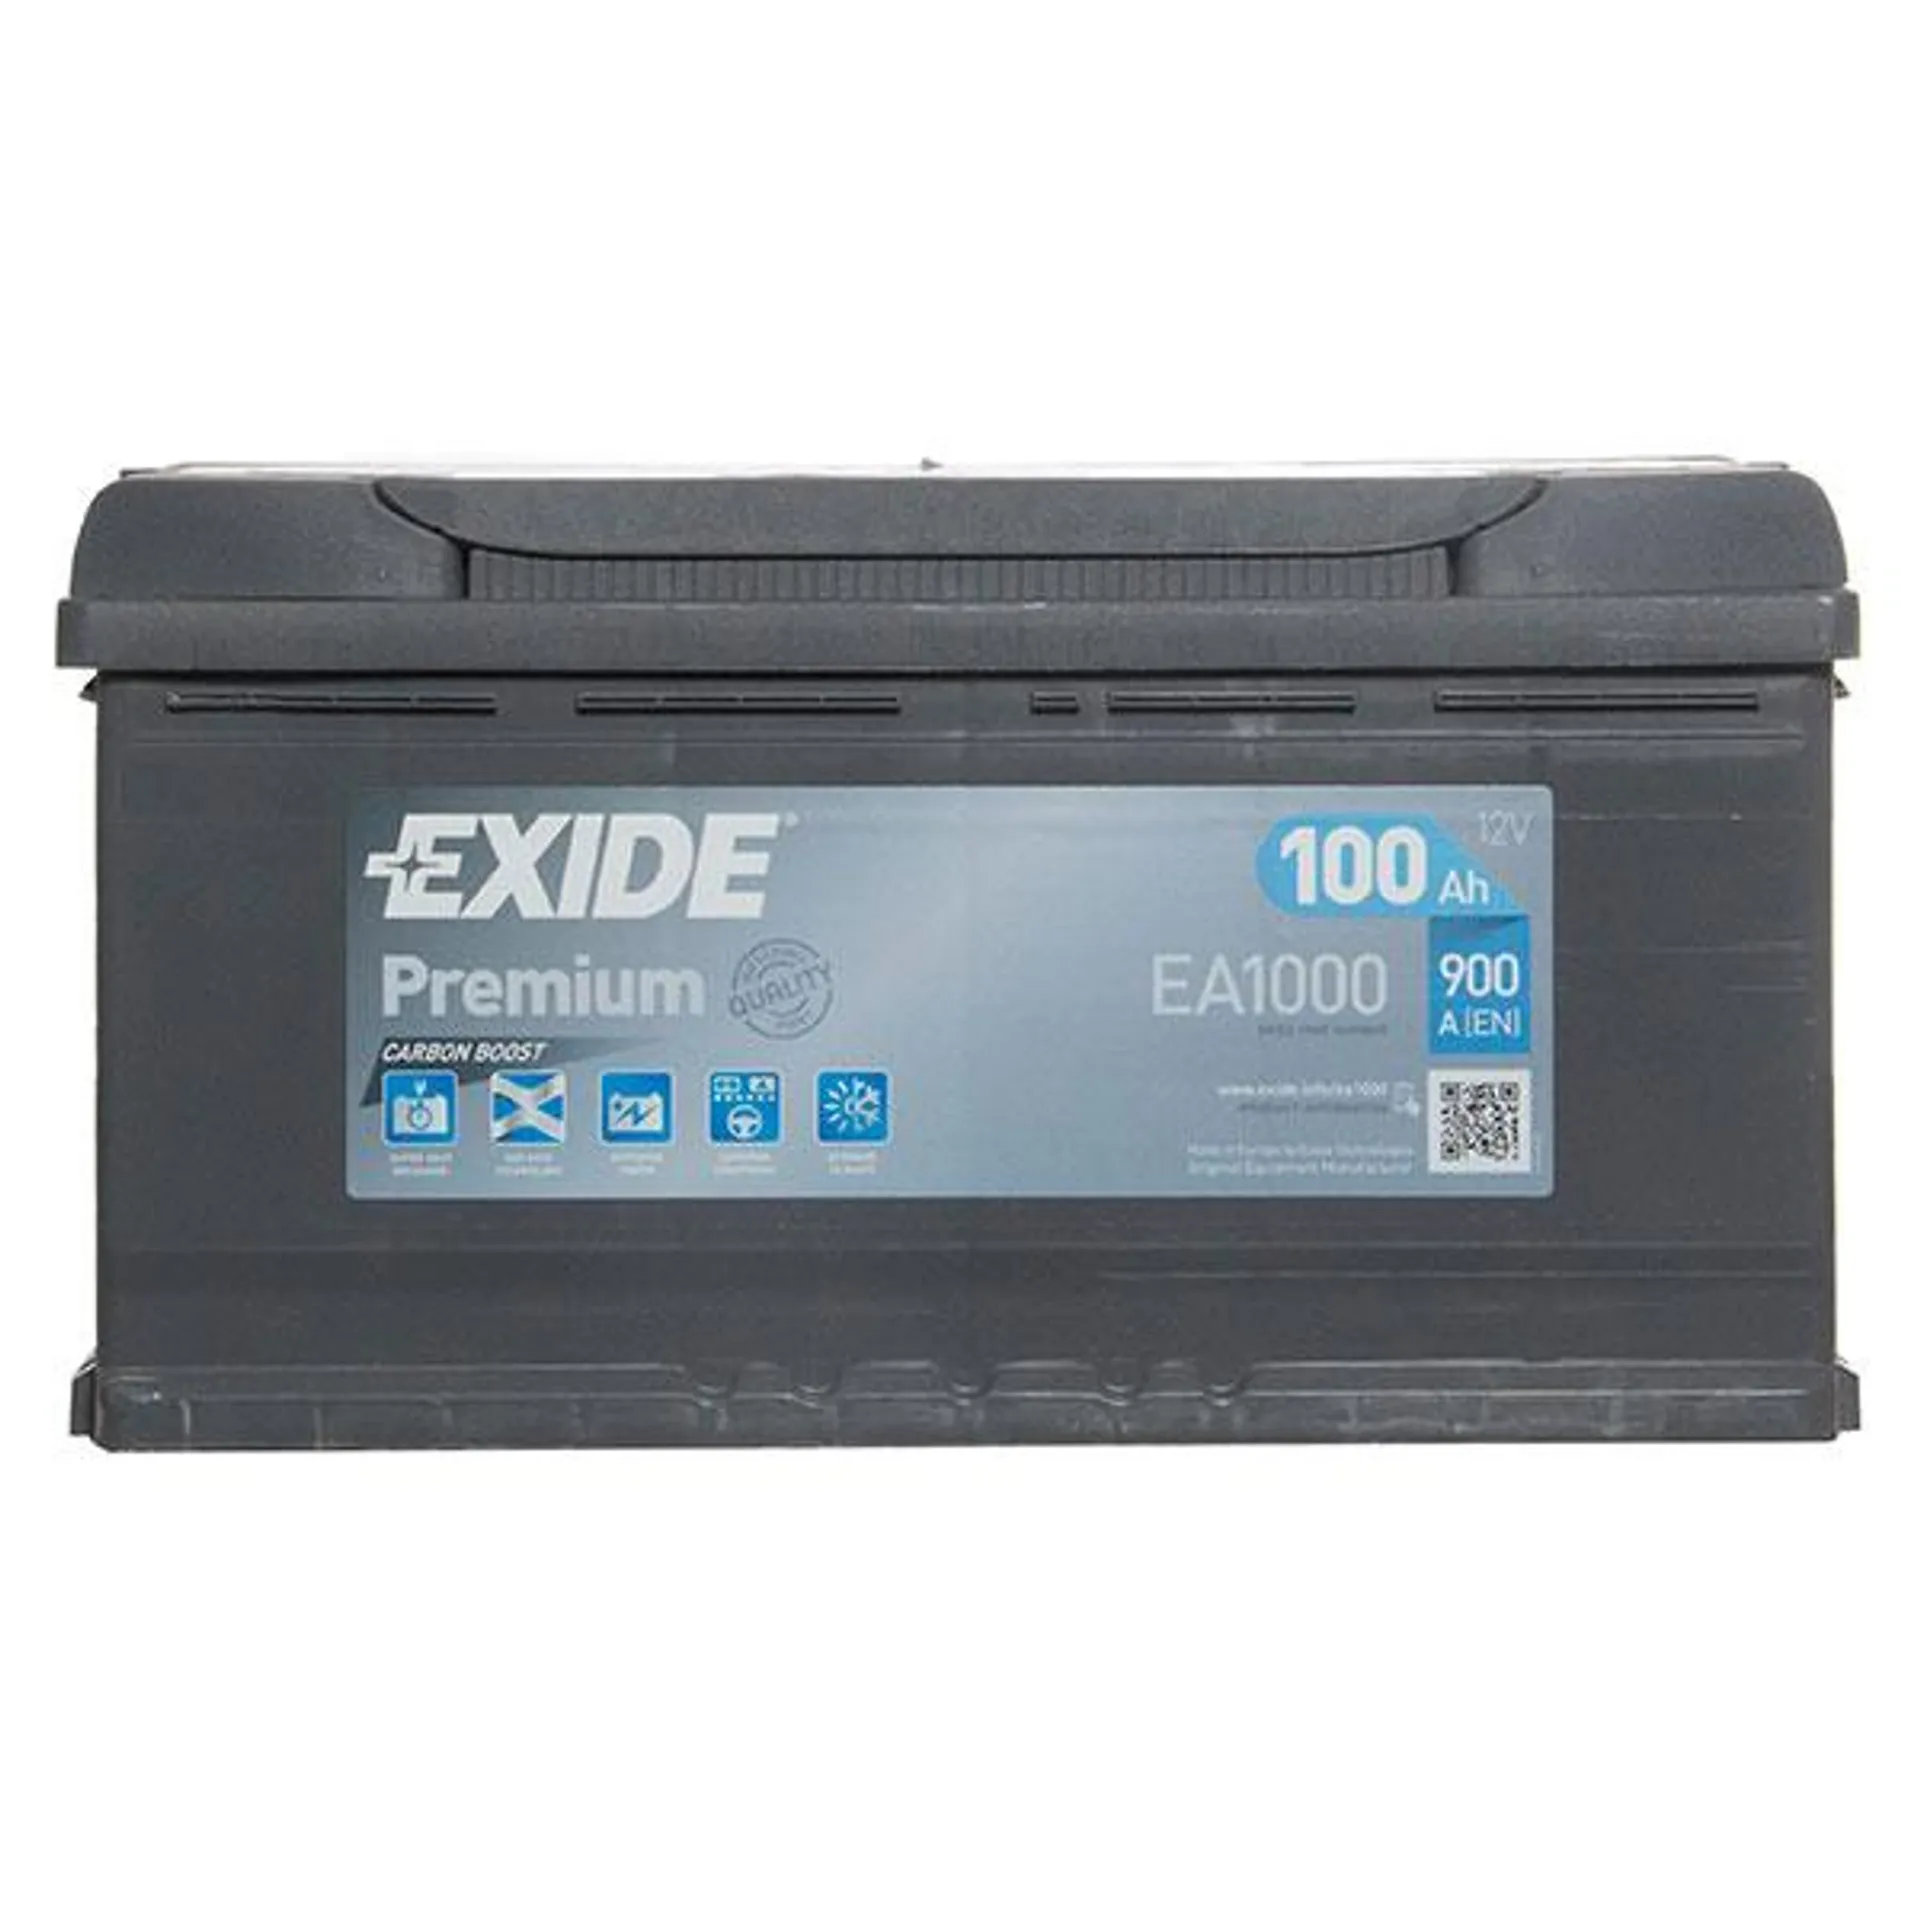 Exide Premium 017 / 019 (100Ah) Car Battery - 5 Year Guarantee